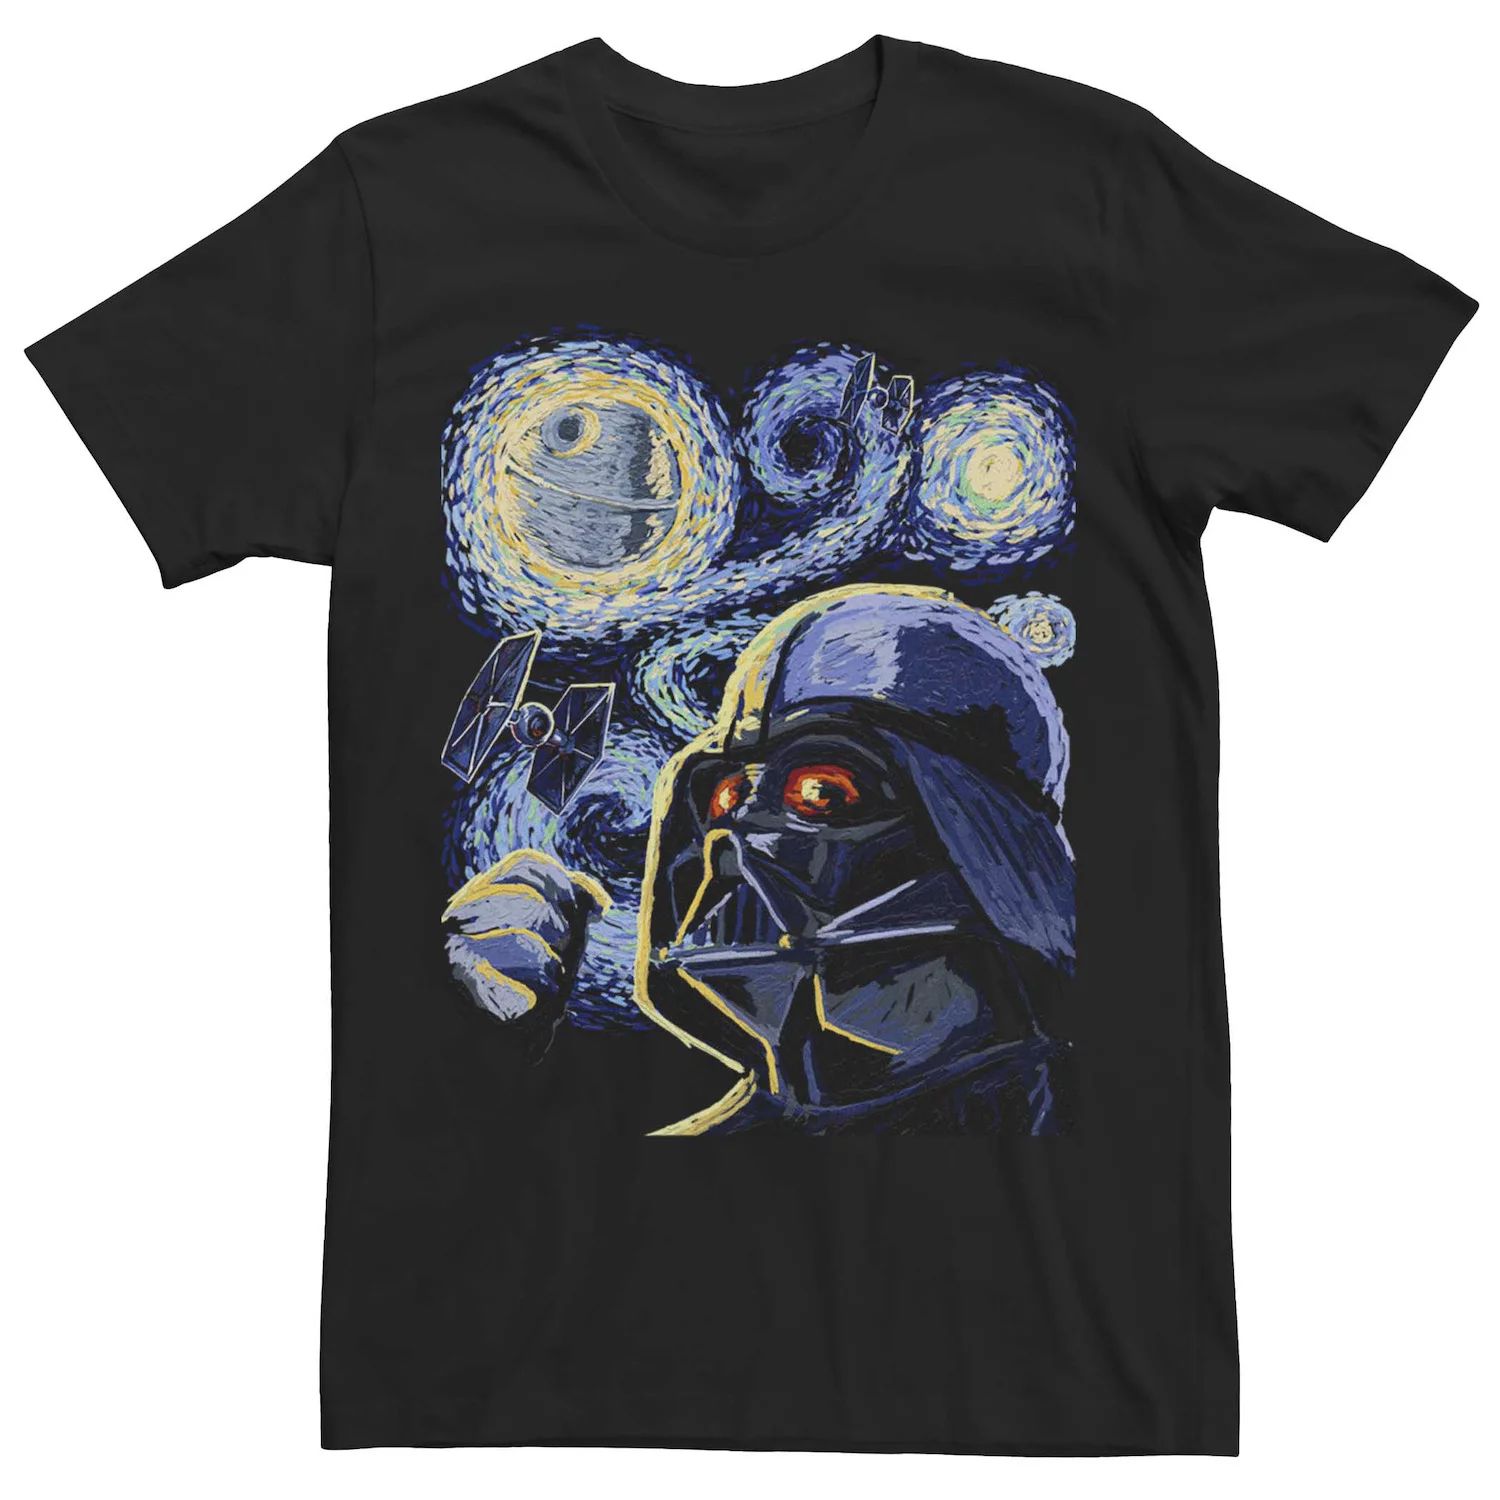 Мужская футболка с рисунком Дарта Вейдера «Звездные войны» Licensed Character мужская футболка с костюмом дарта вейдера звездные войны licensed character